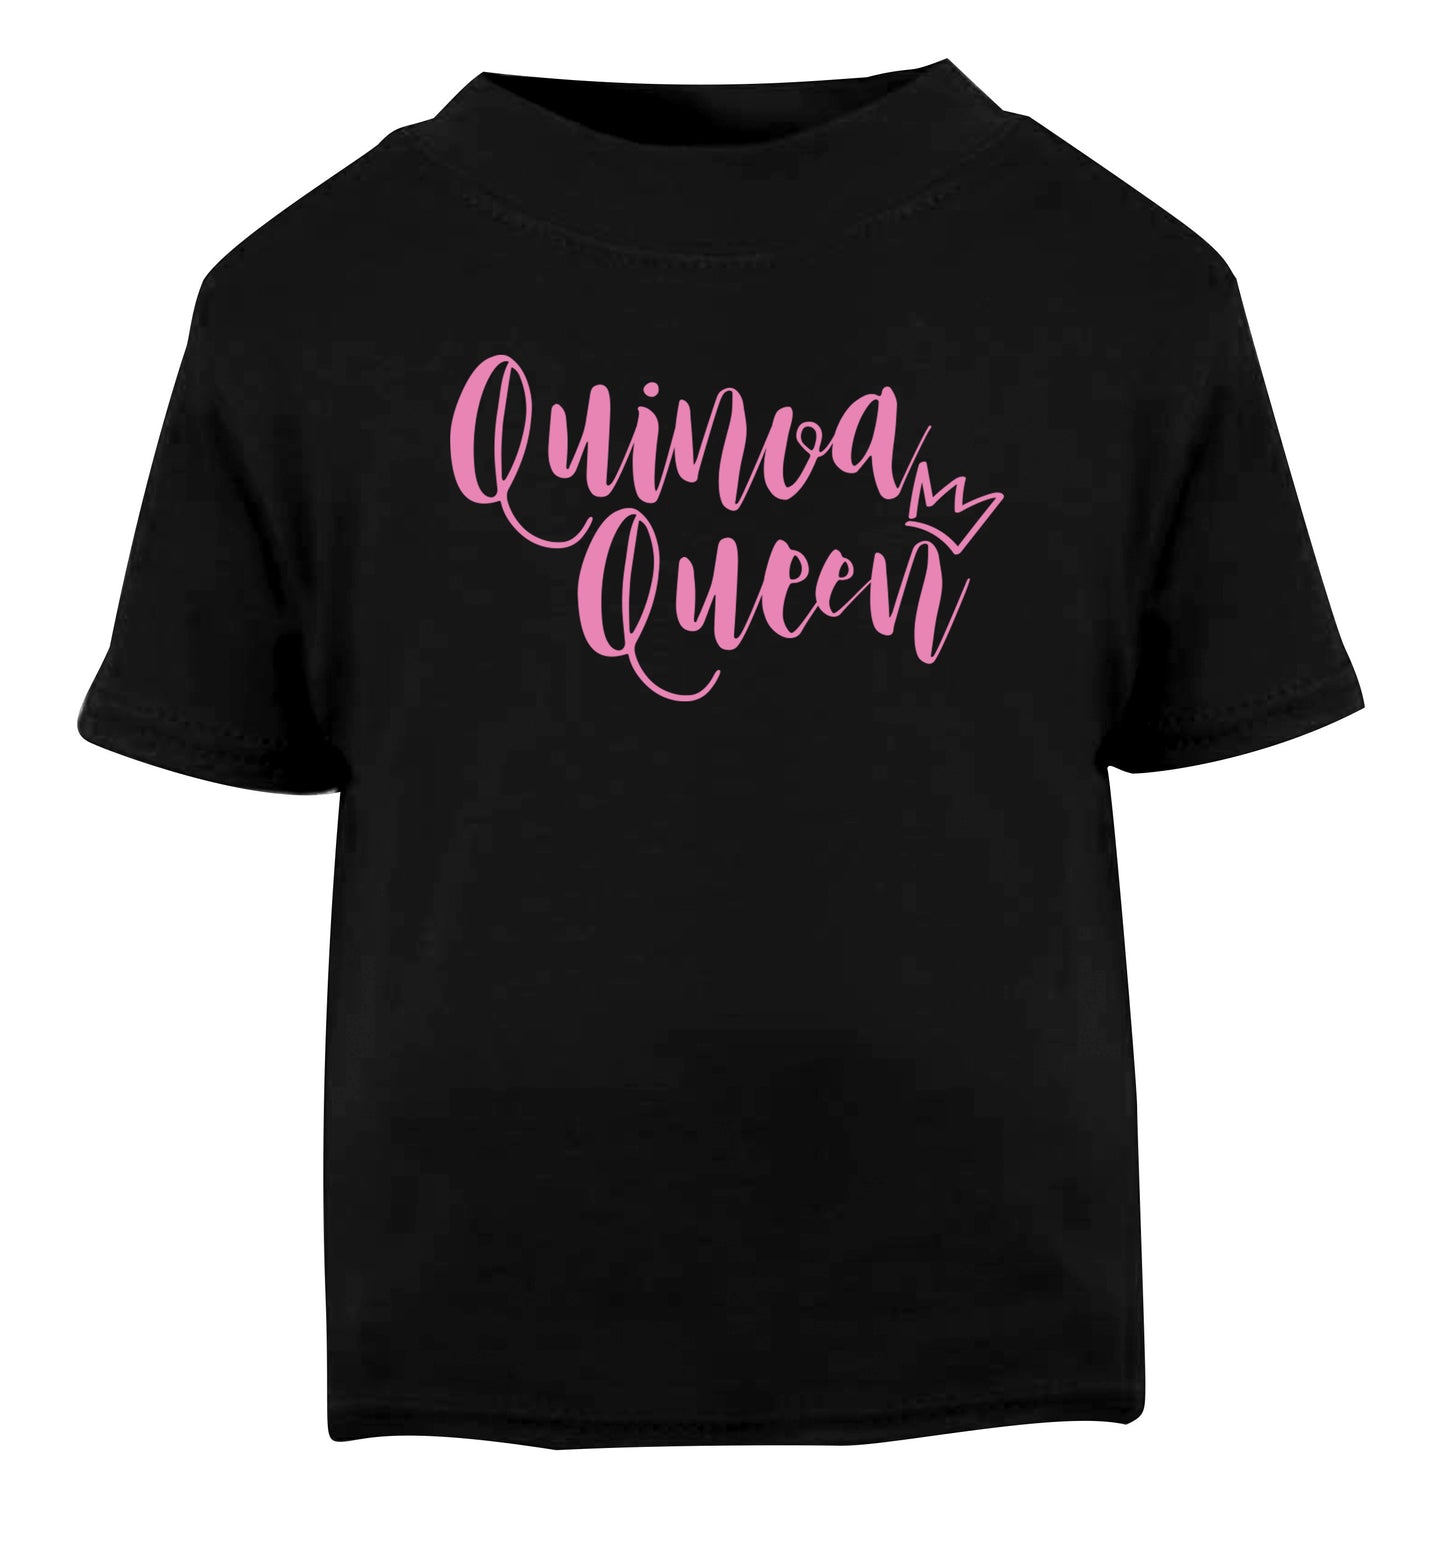 Quinoa Queen Black Baby Toddler Tshirt 2 years